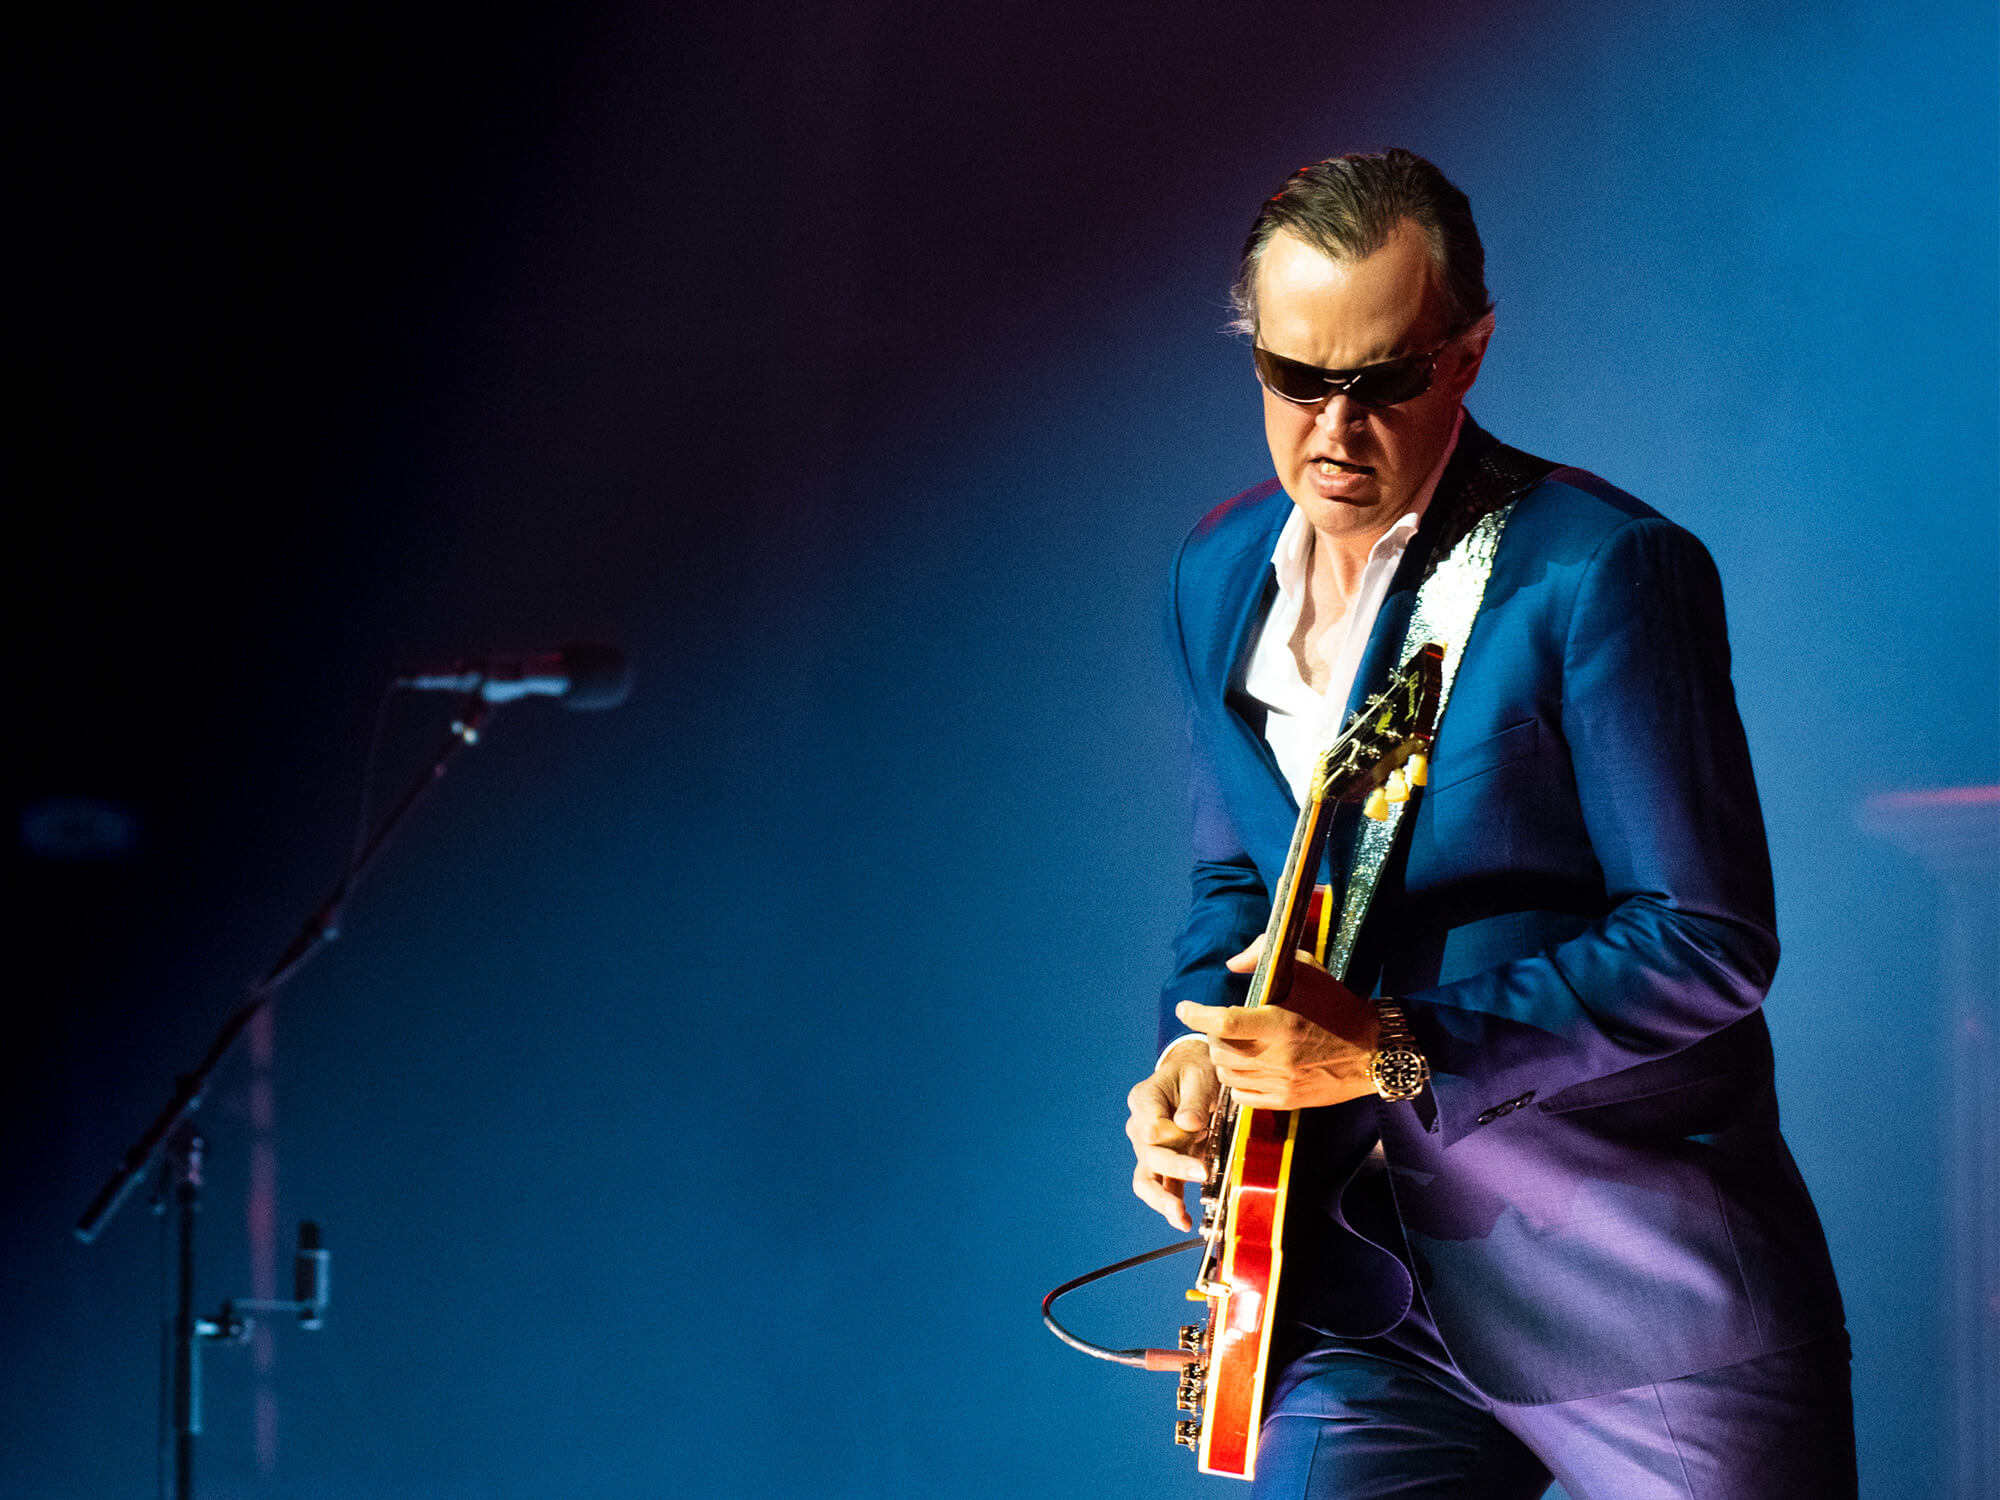 Joe Bonamassa wearing sunglasses and a suit, playing guitar on stage